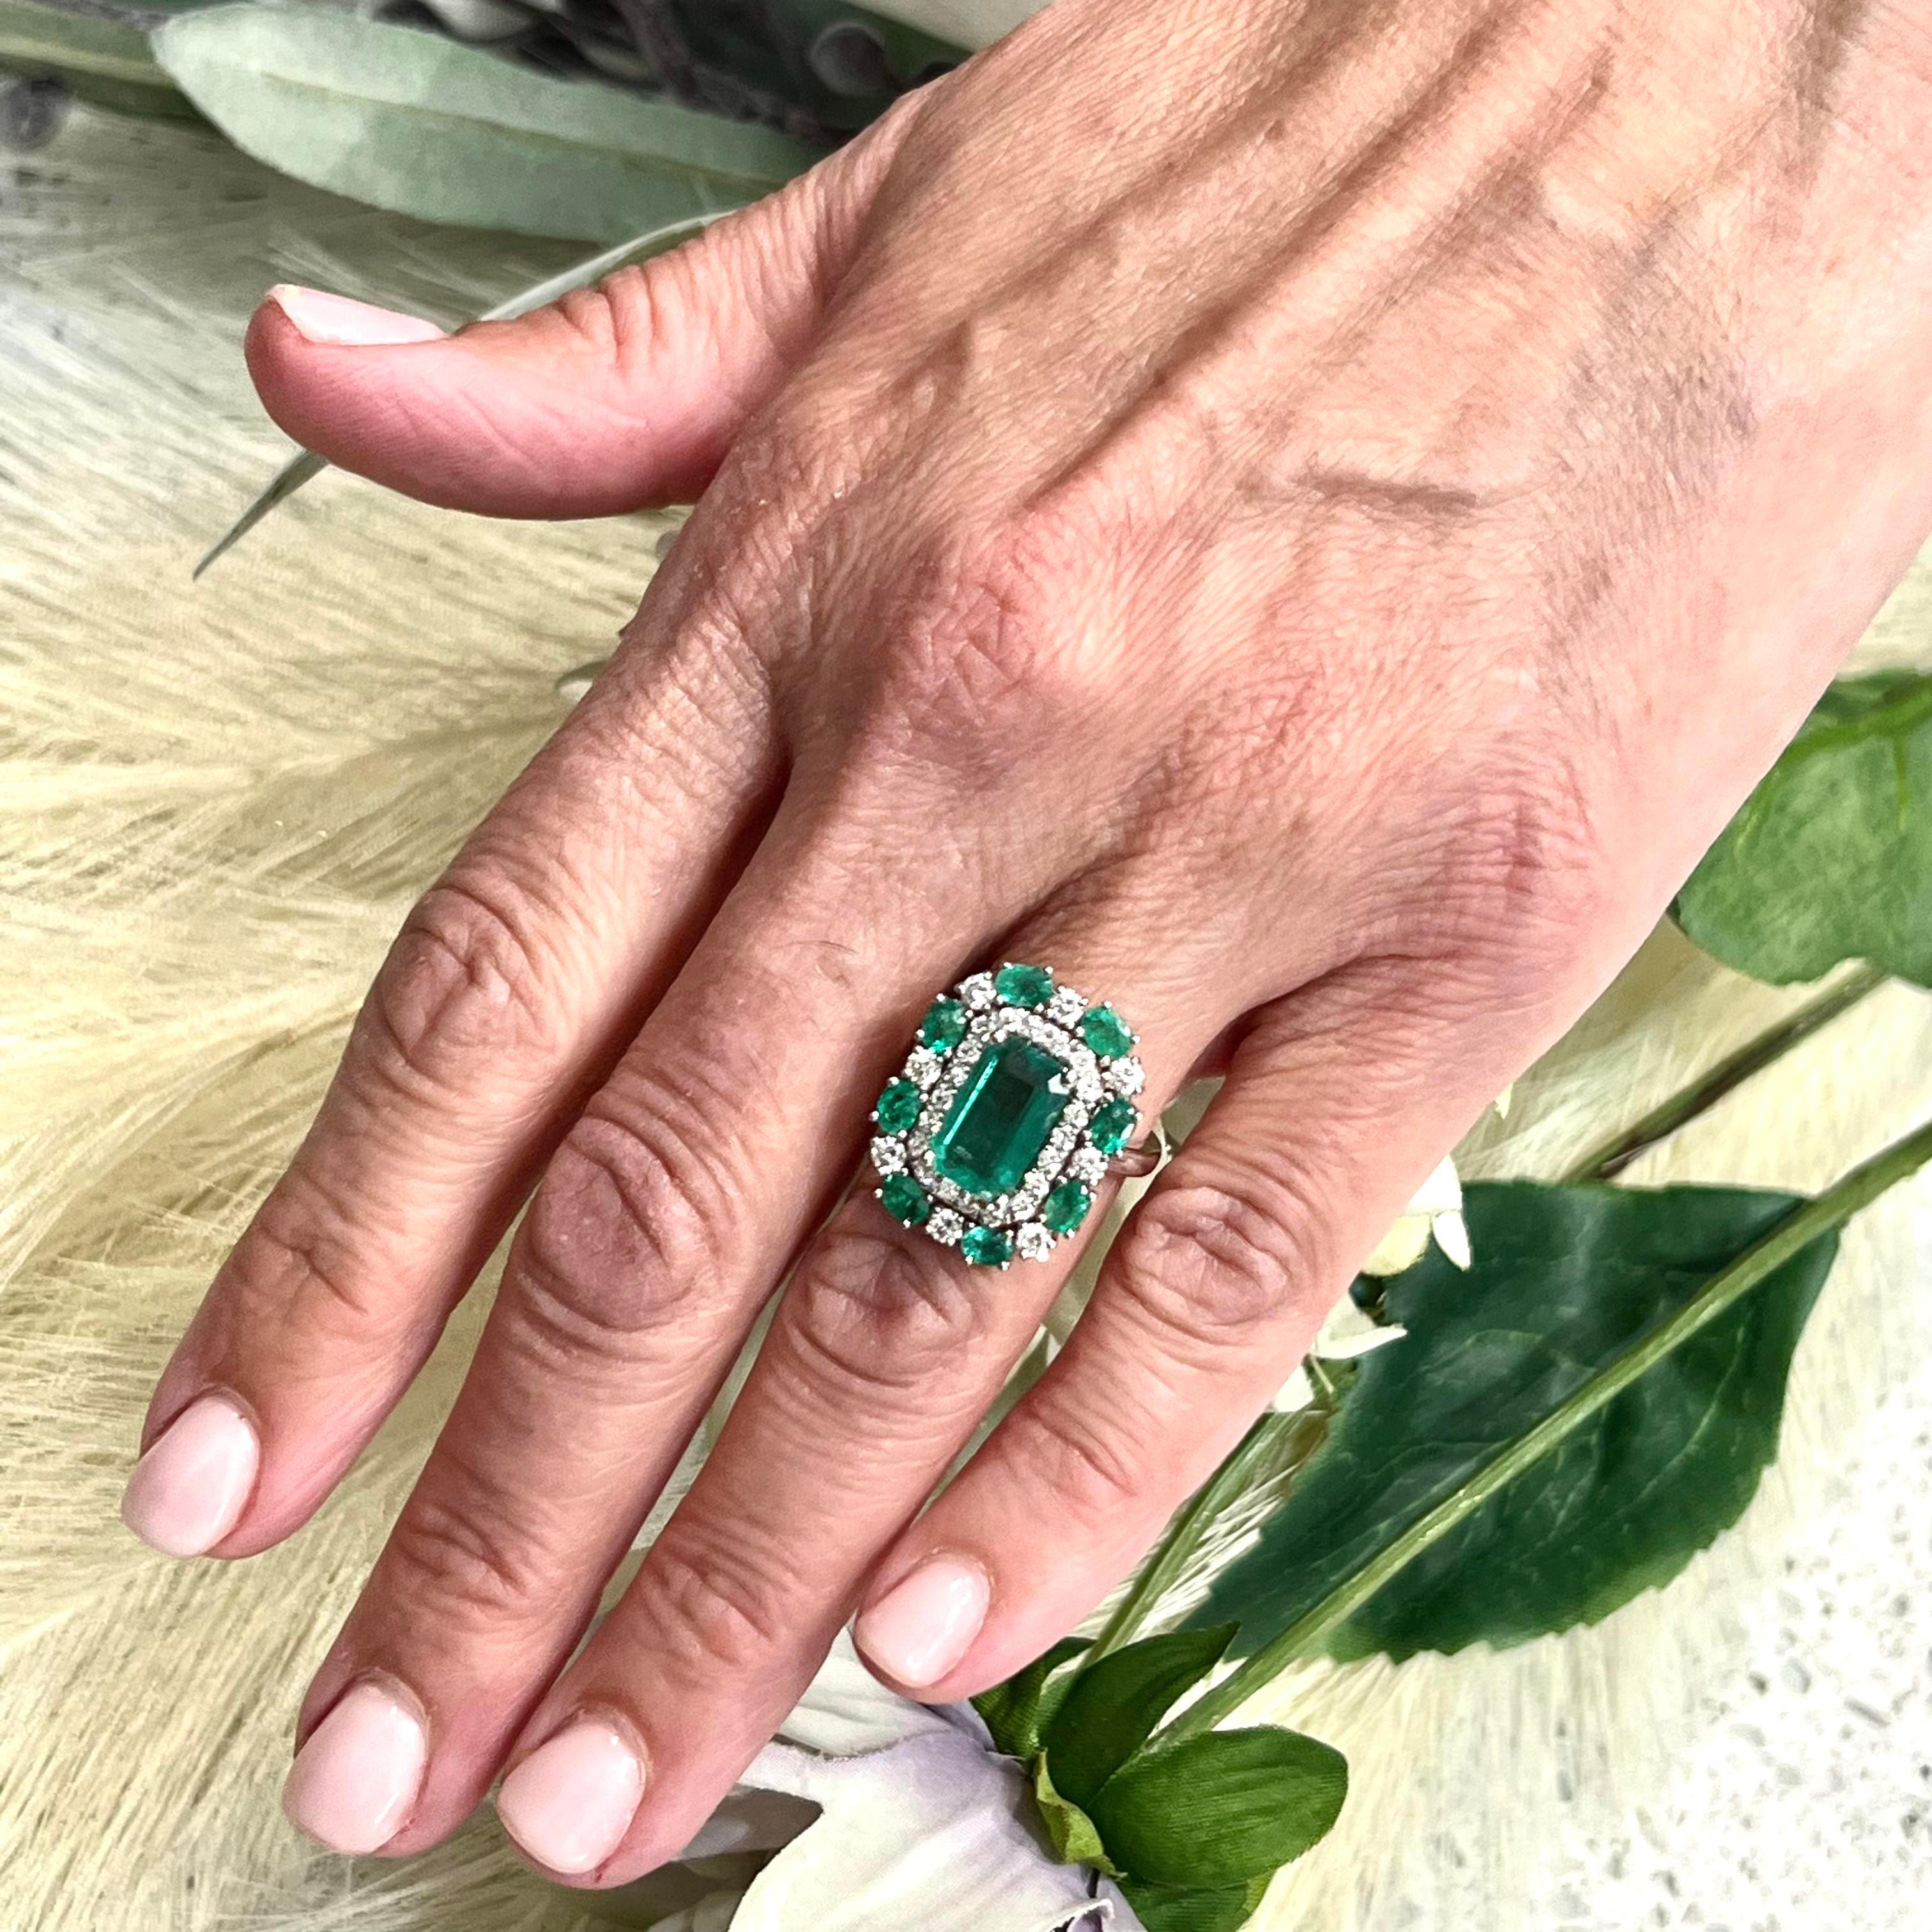 Natürliche fein facettiert Qualität Smaragd Diamant-Ring 6,5 14k Gold 4,52 TCW GIA zertifiziert $12.950 210738

Dies ist ein einzigartiges, maßgeschneidertes, glamouröses Schmuckstück!

Nichts sagt mehr 